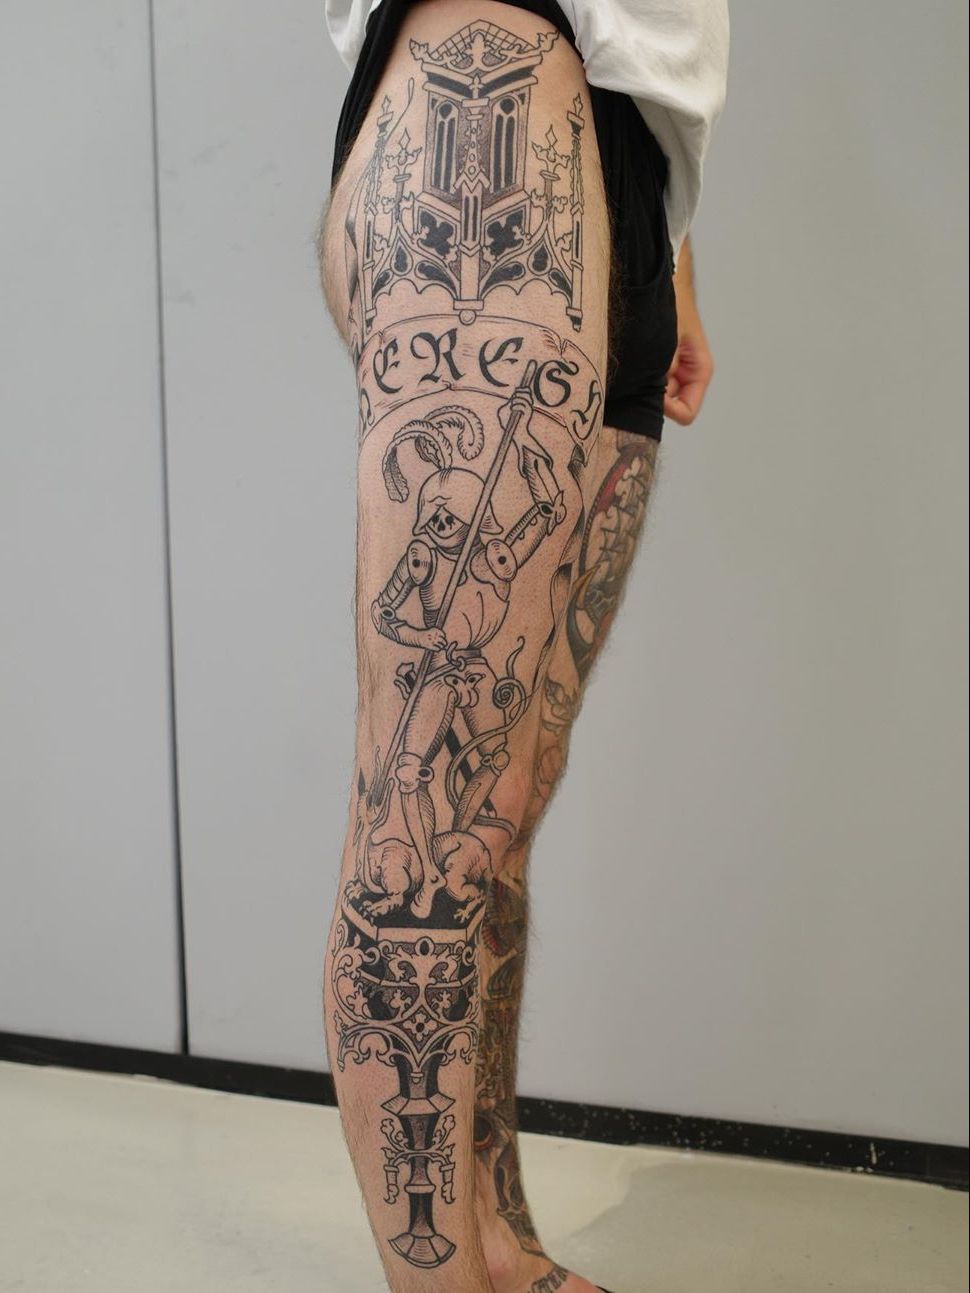 Tattoo uploaded by JenTheRipper • Danse macabre tattoo by Neal Panda  #NealPanda #medievalart #dansemacabre #skeleton #king • Tattoodo